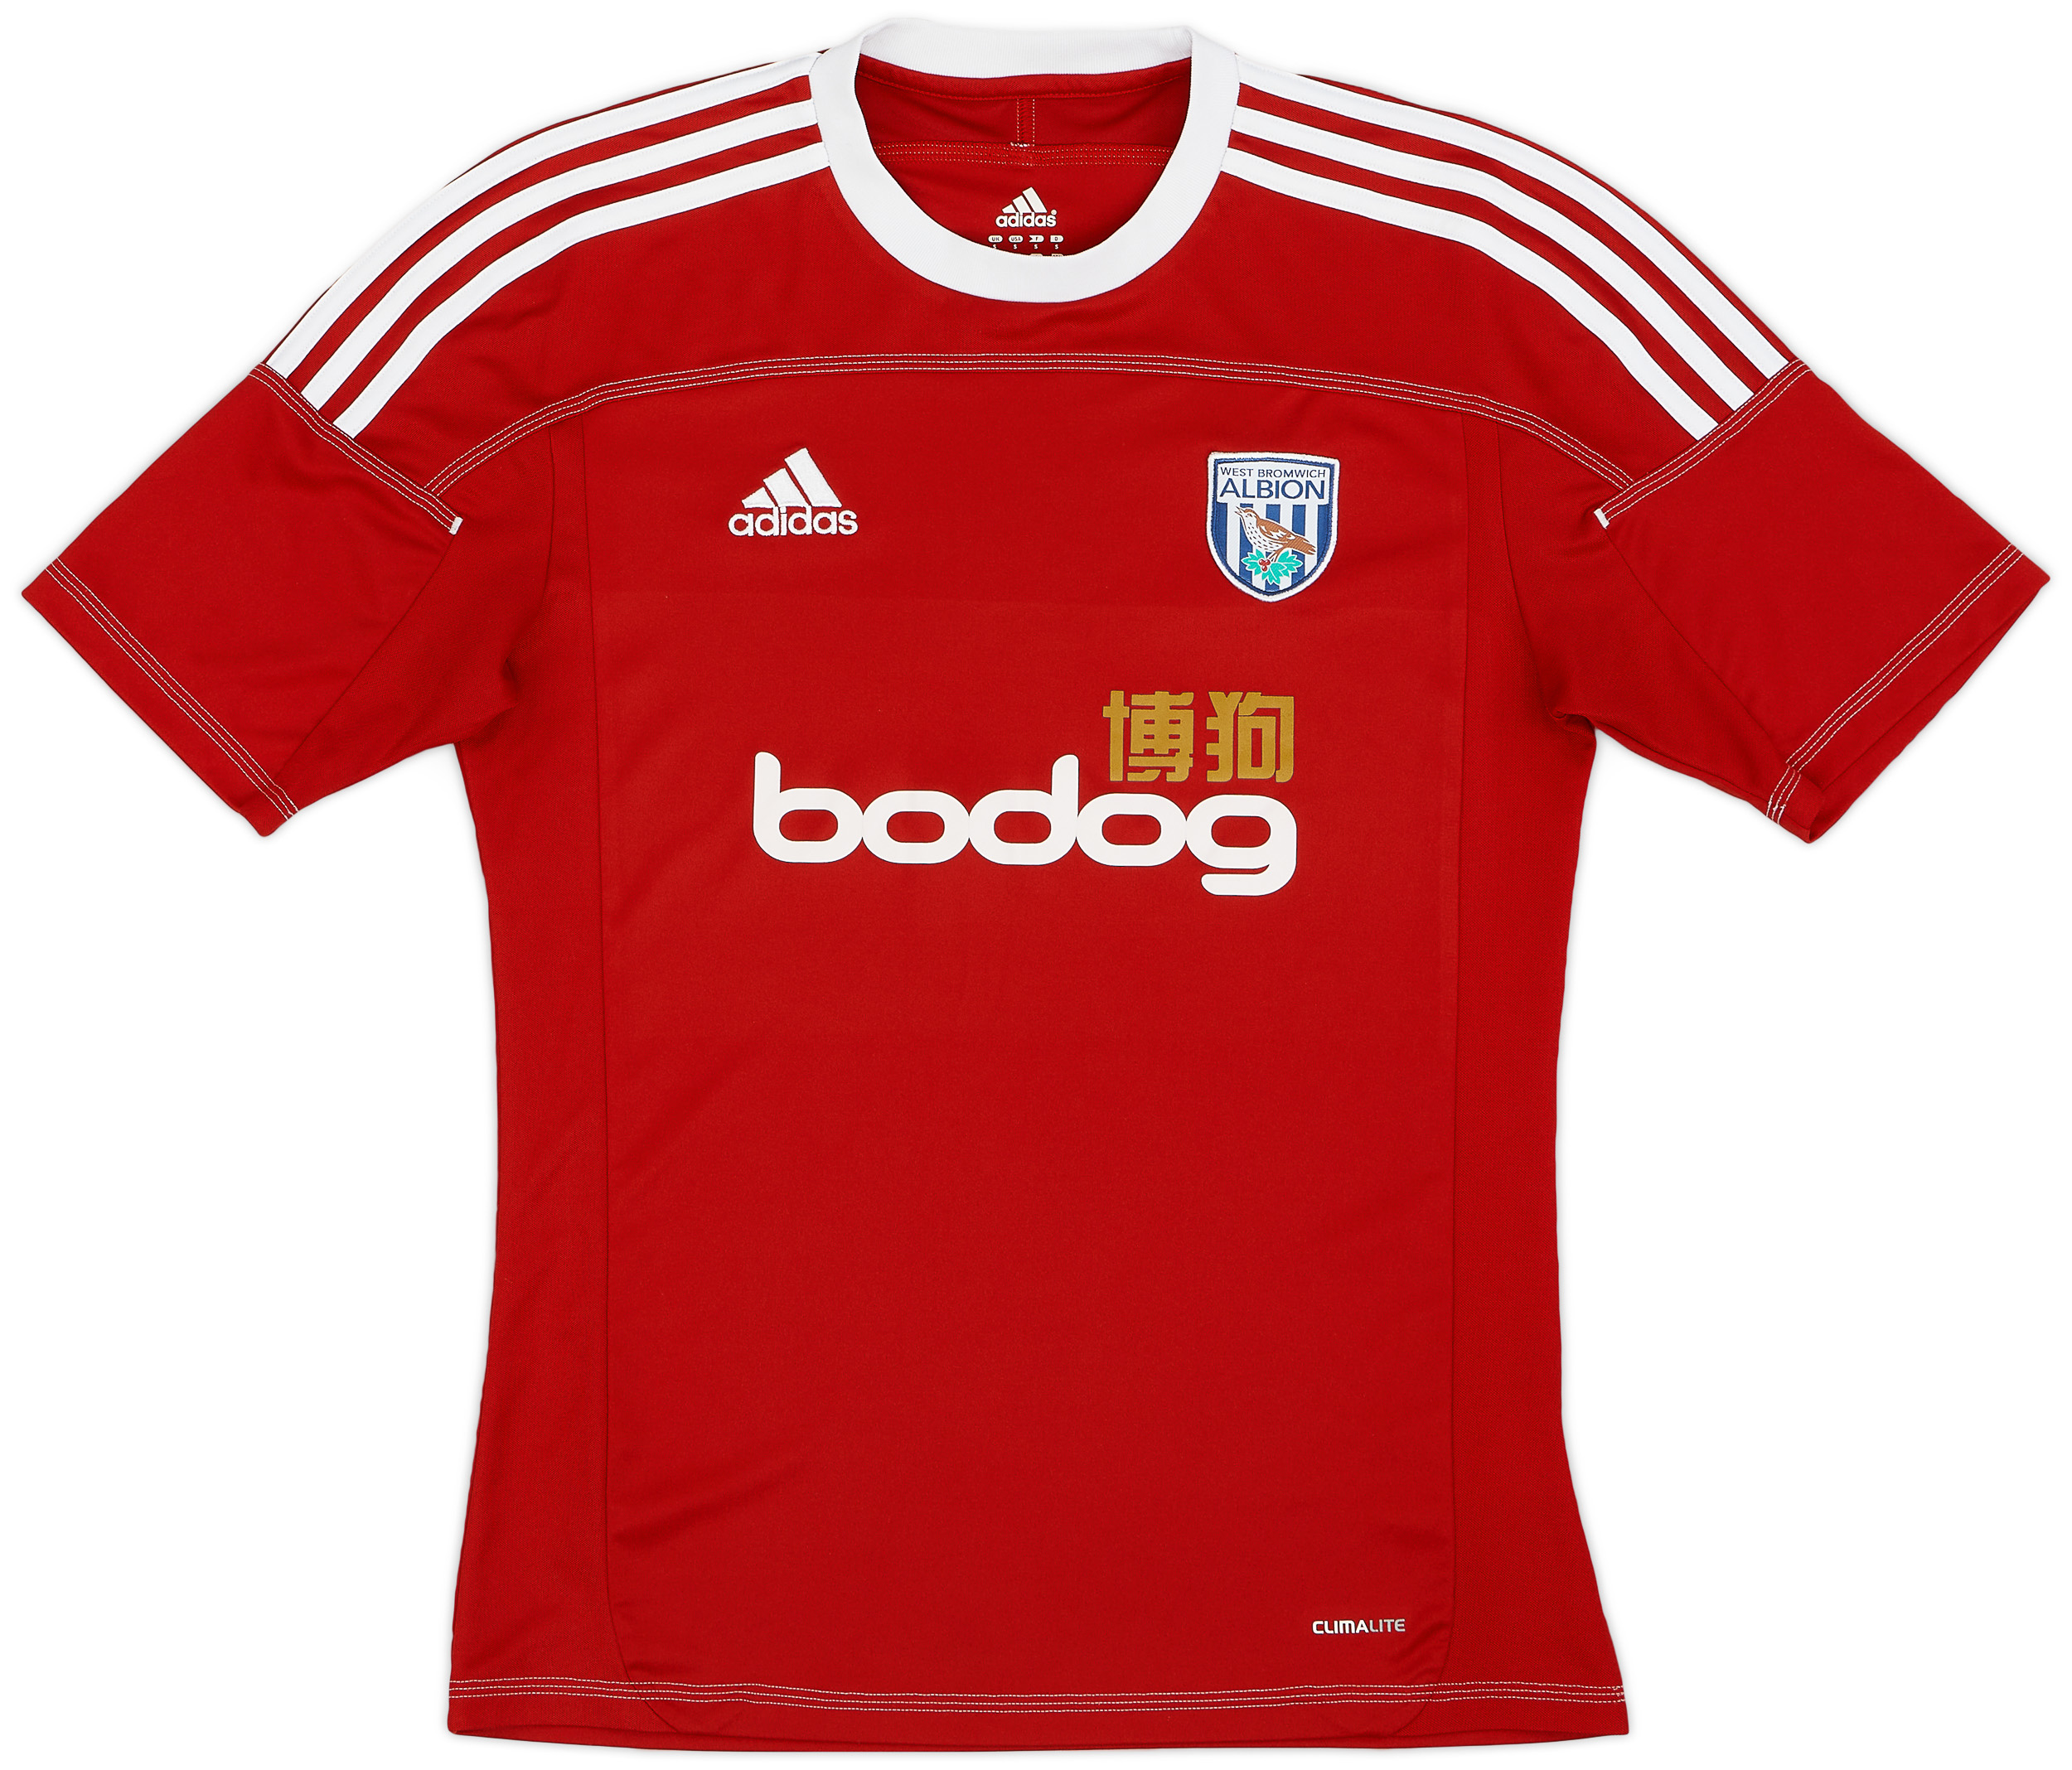 West Bromwich Albion  Tredje tröja (Original)